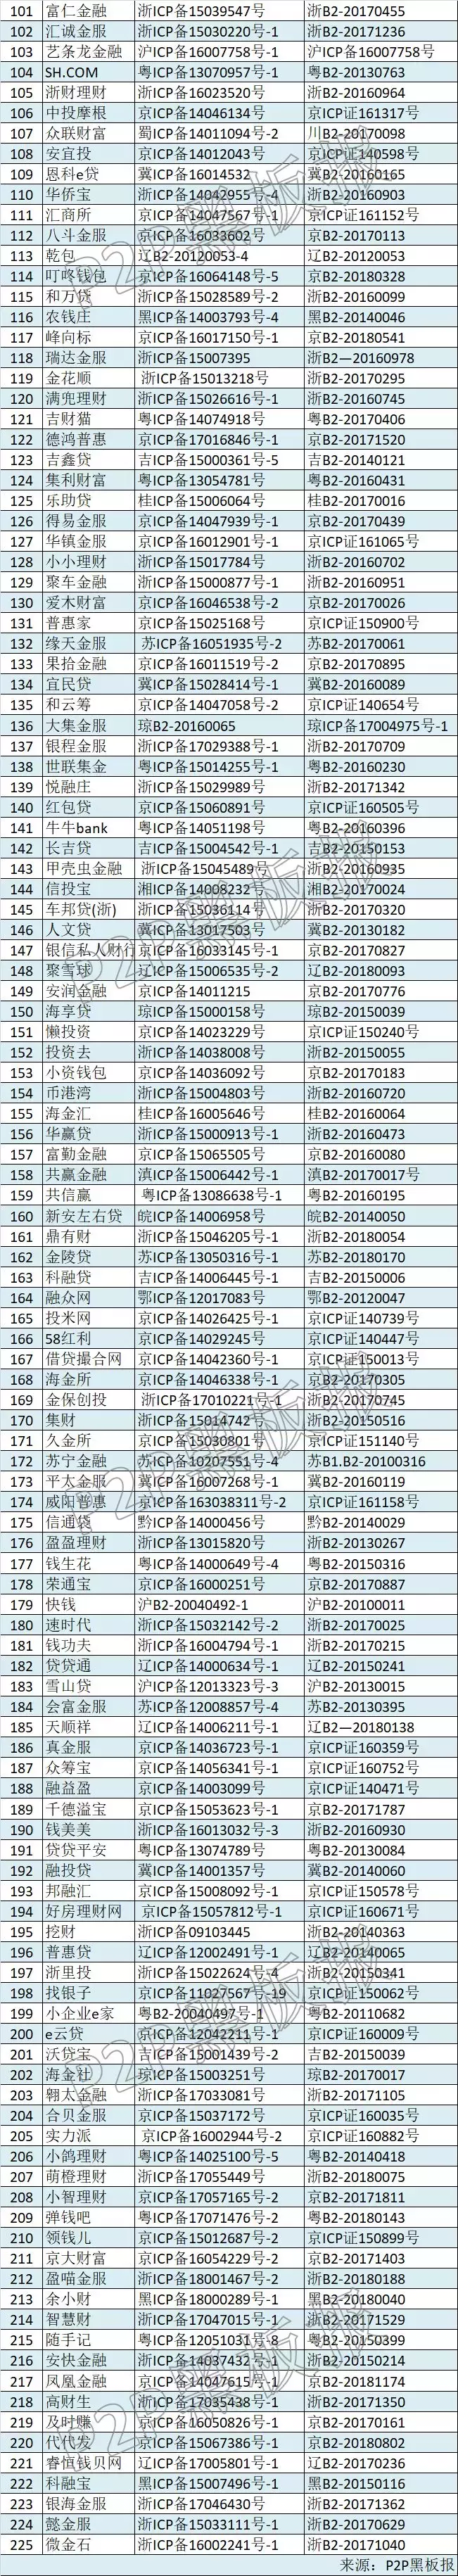 同时具备ICP许可证和ICP备案的P2P平台仅225家（附名单）